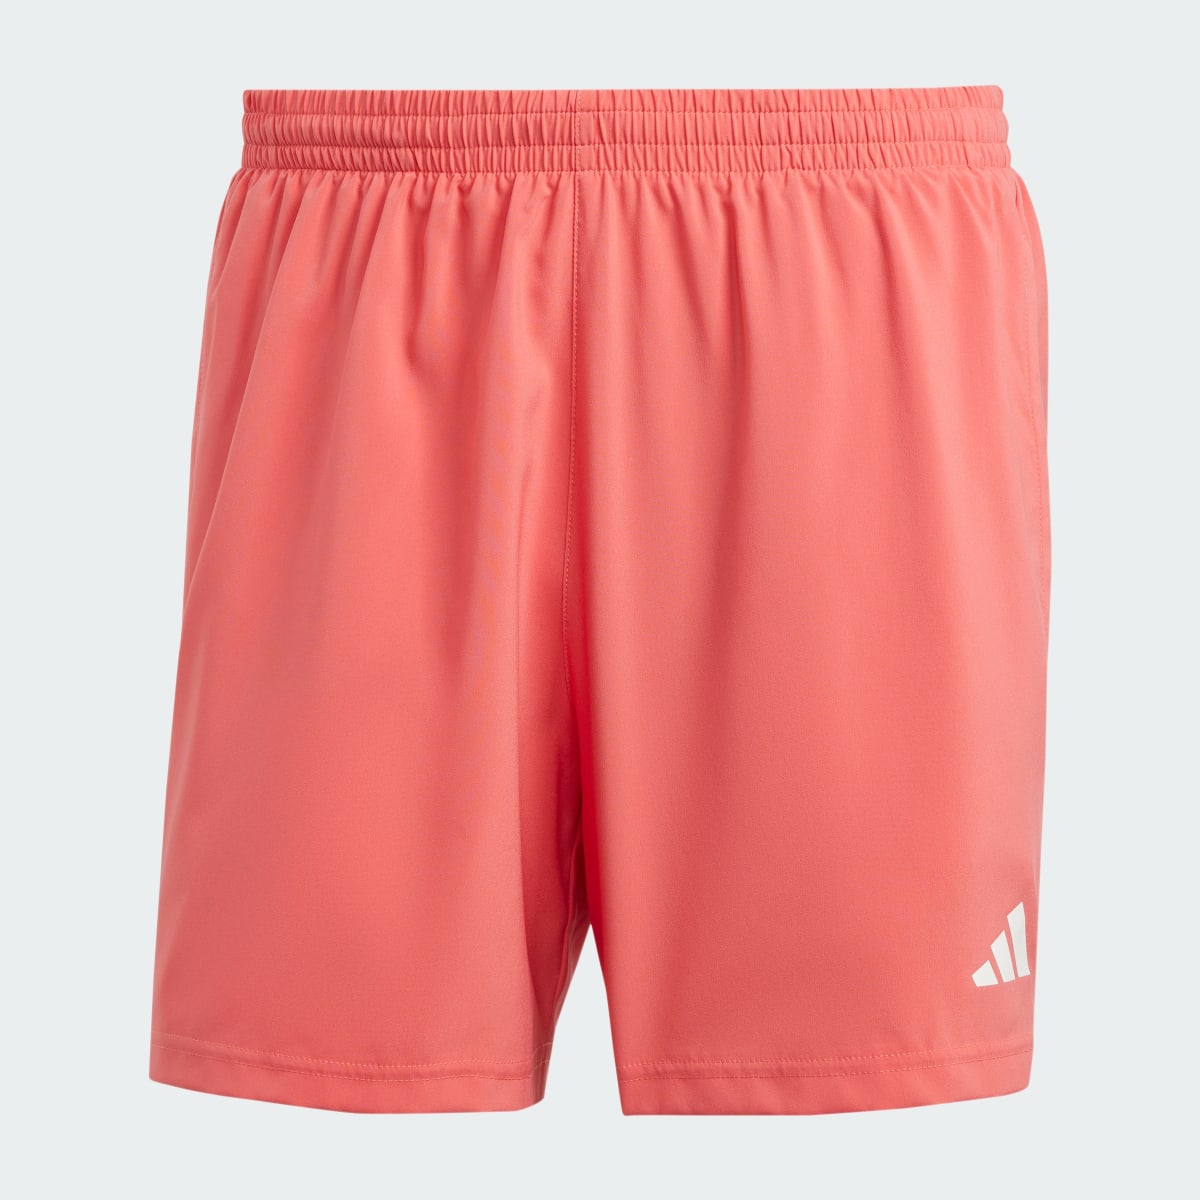 Adidas Own The Run Shorts. 4